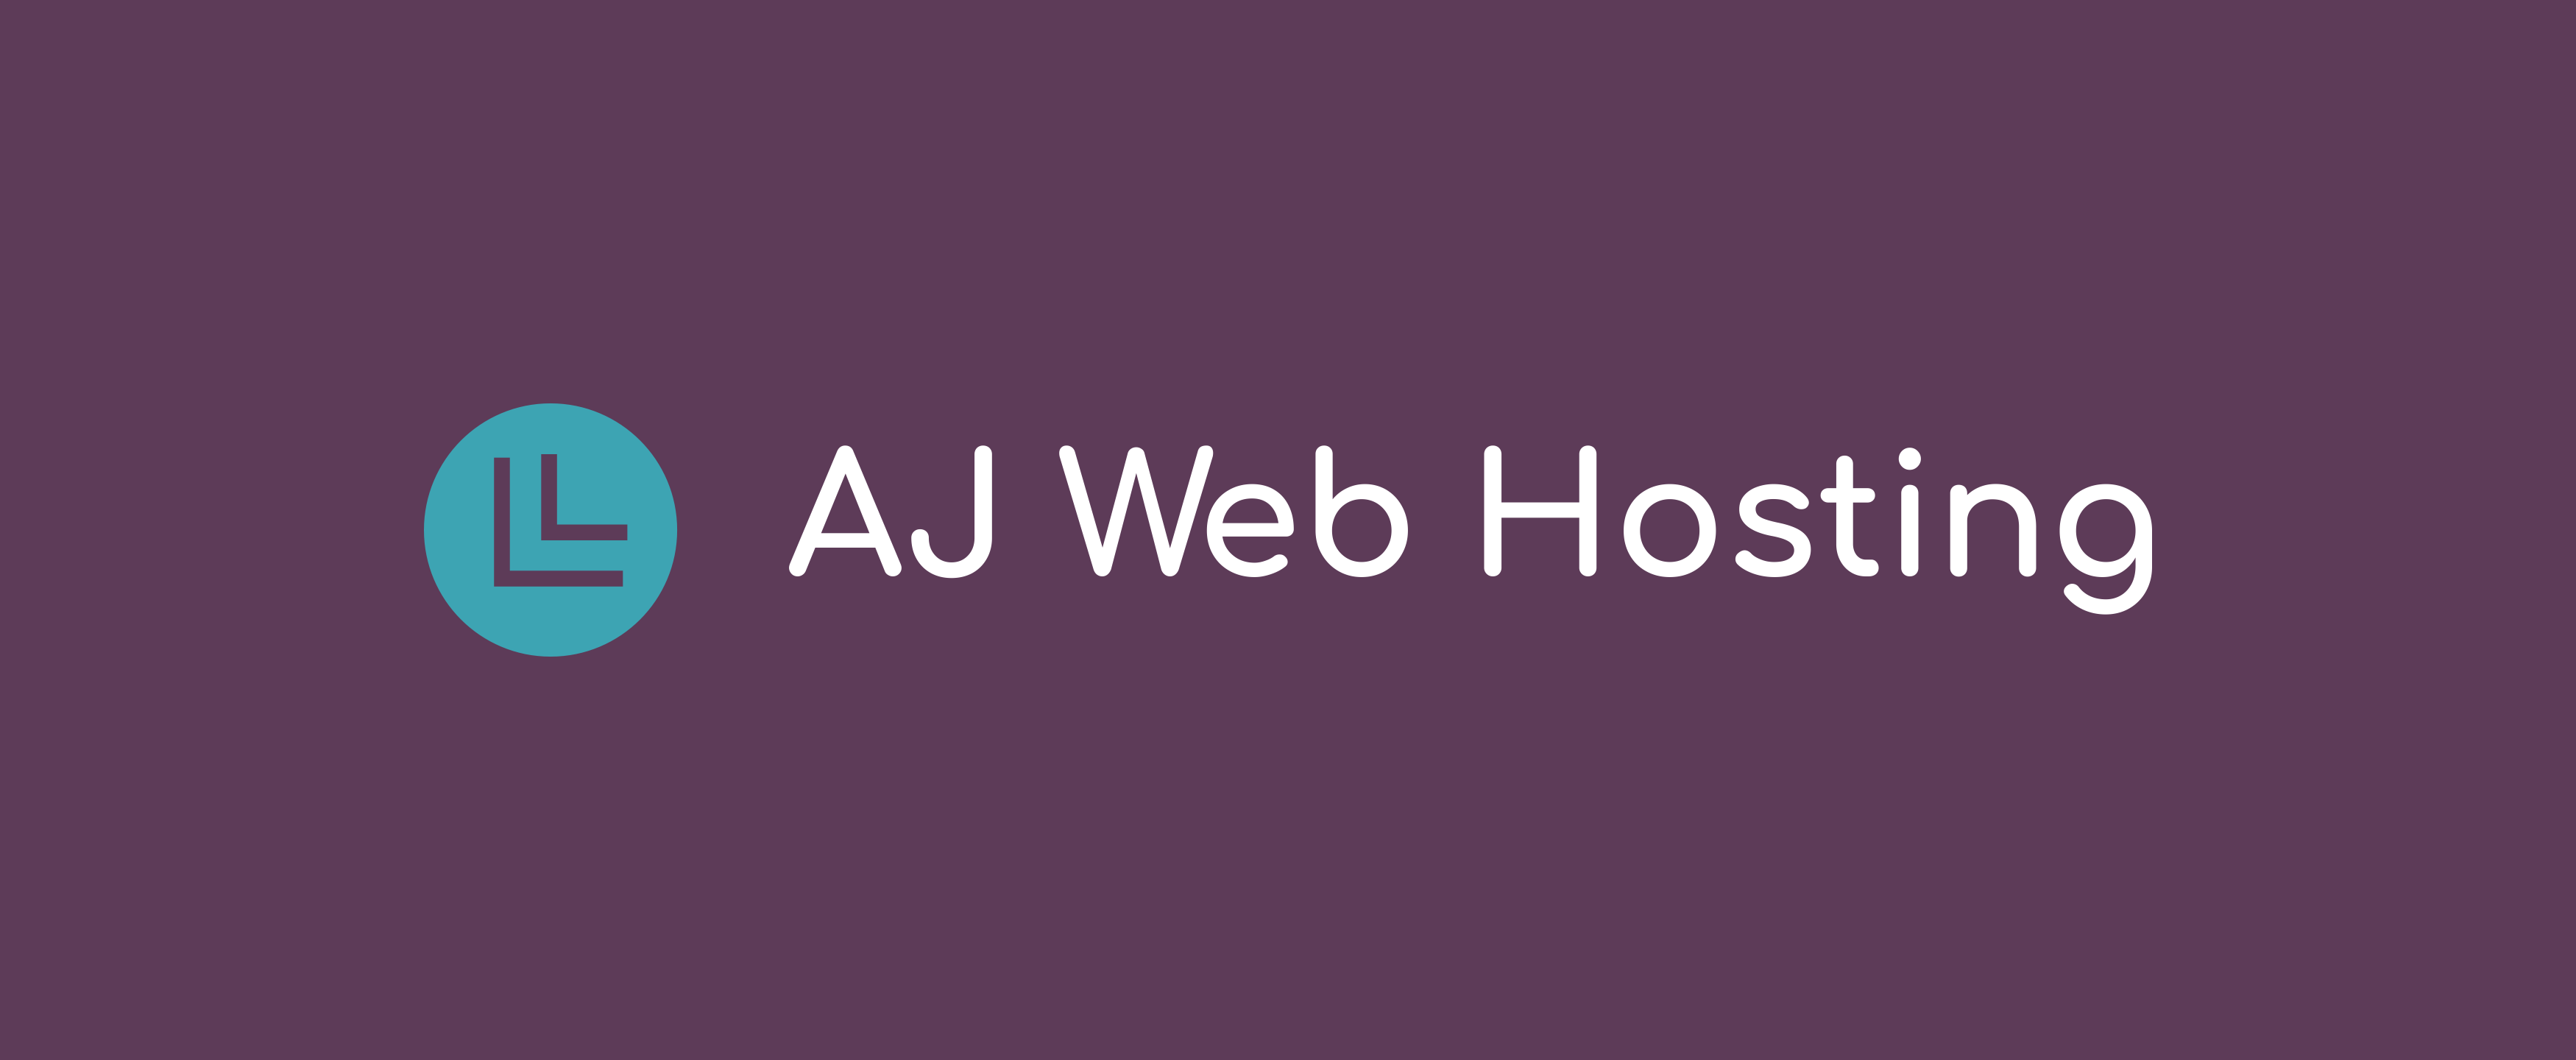 AJ Web Hosting